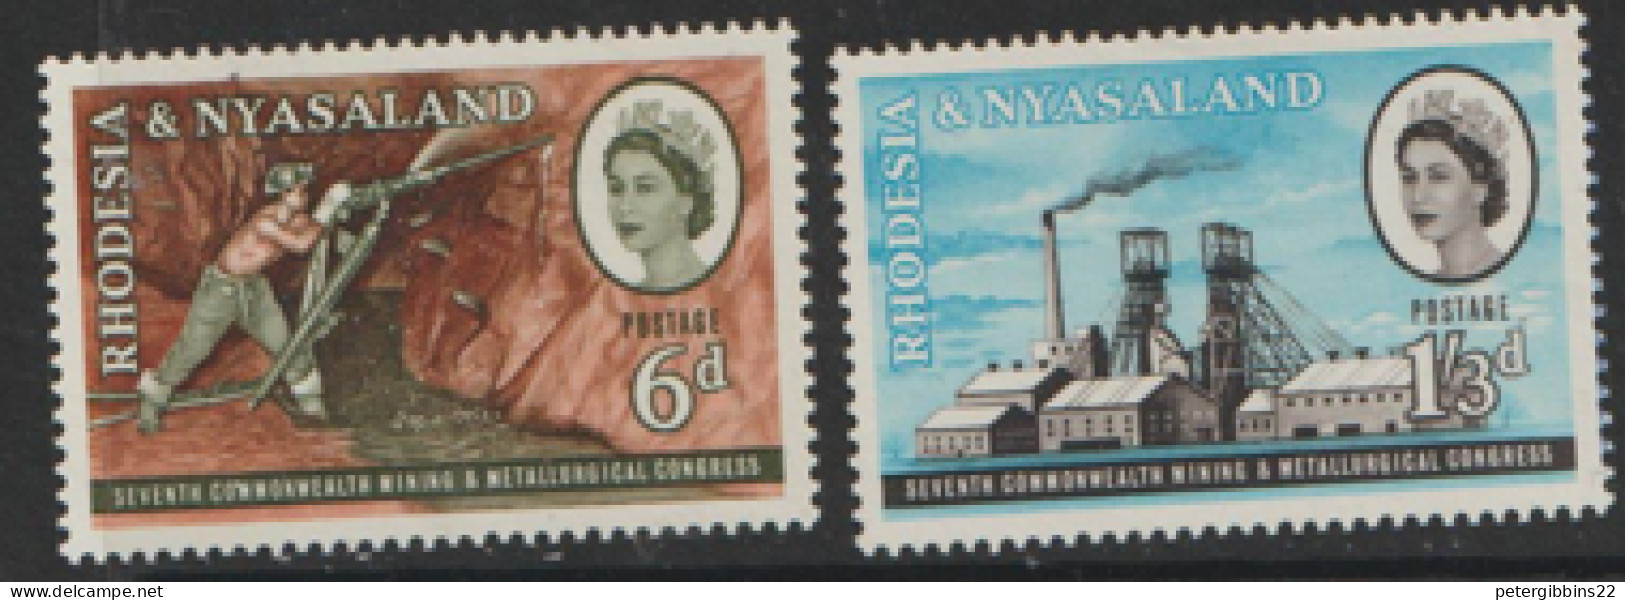 Rhodesia And Nyasaland  1961  SG  38-9  Commonwealth  Mining Unmounted Mint - Rhodesia & Nyasaland (1954-1963)